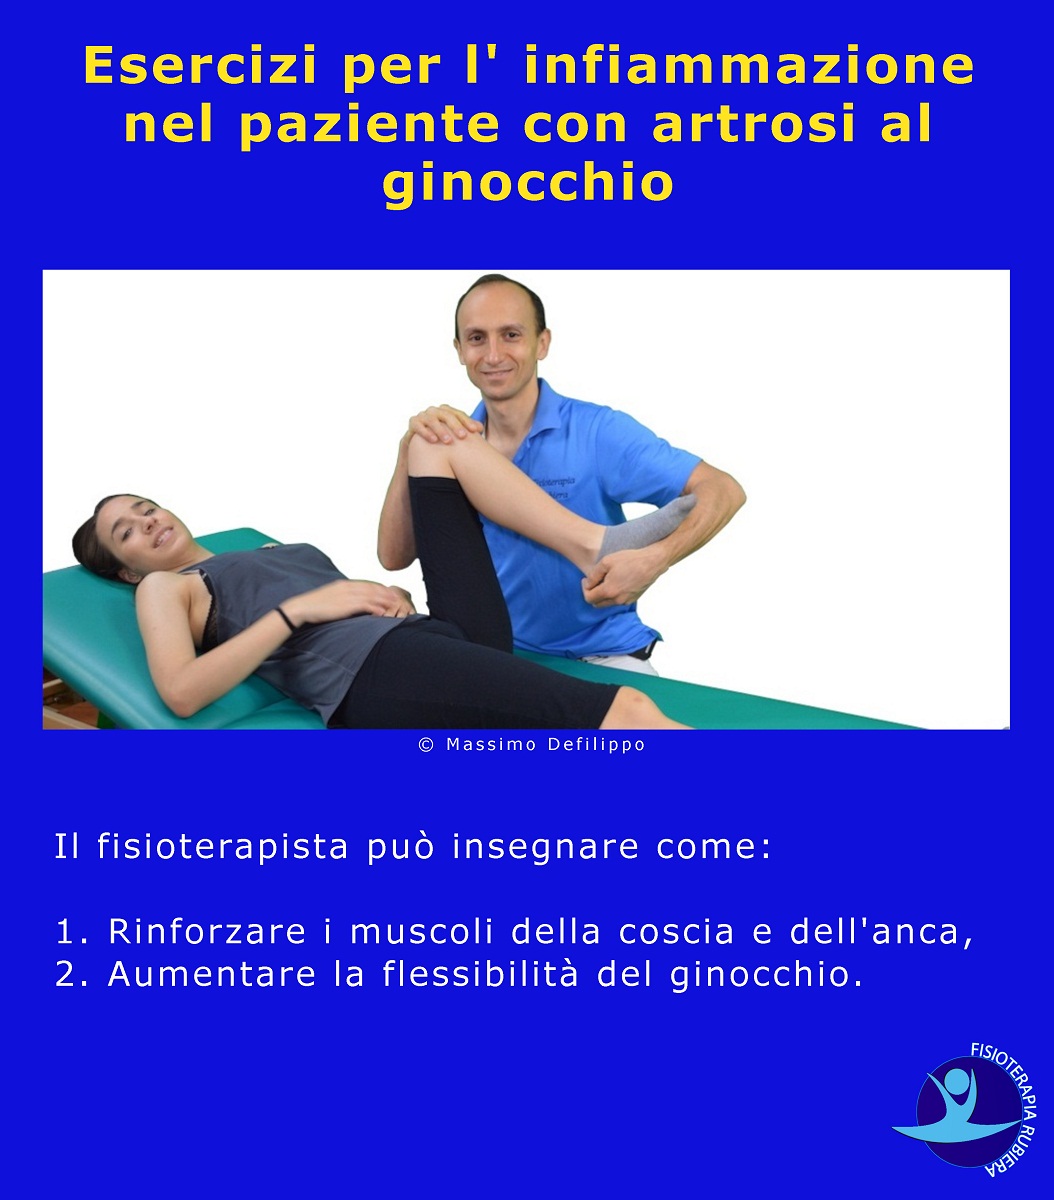 Esercizi per l' infiammazione nel paziente con artrosi al ginocchio